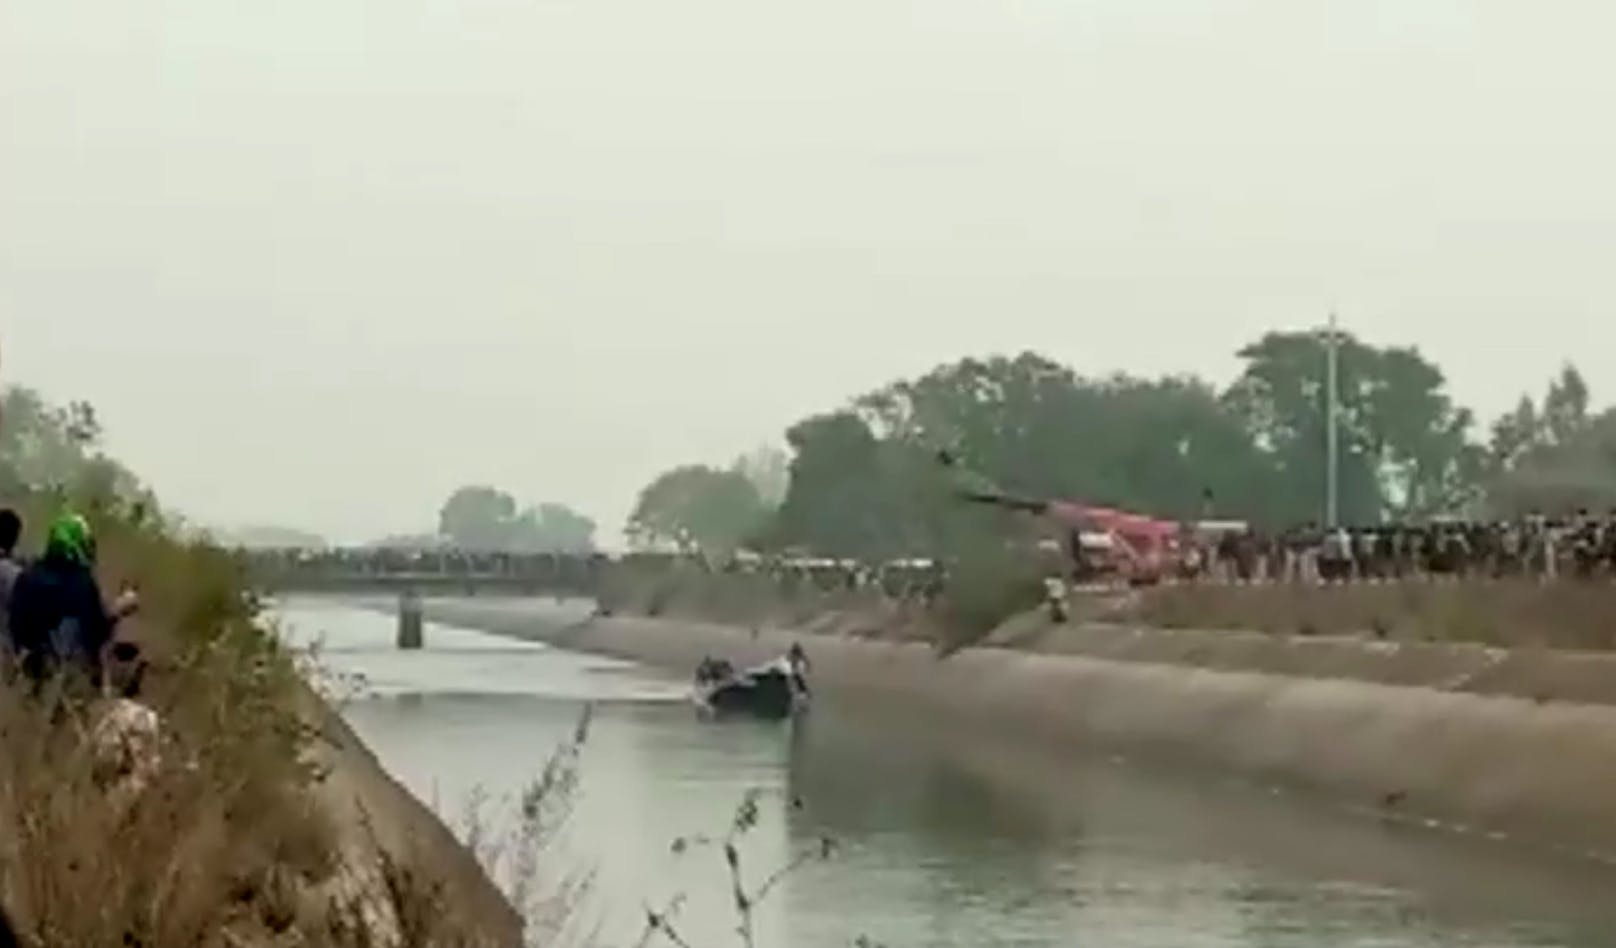 In Indien sind mindestens 40 Menschen ums Leben gekommen. Ein Bus stürzte in einen Kanal. 